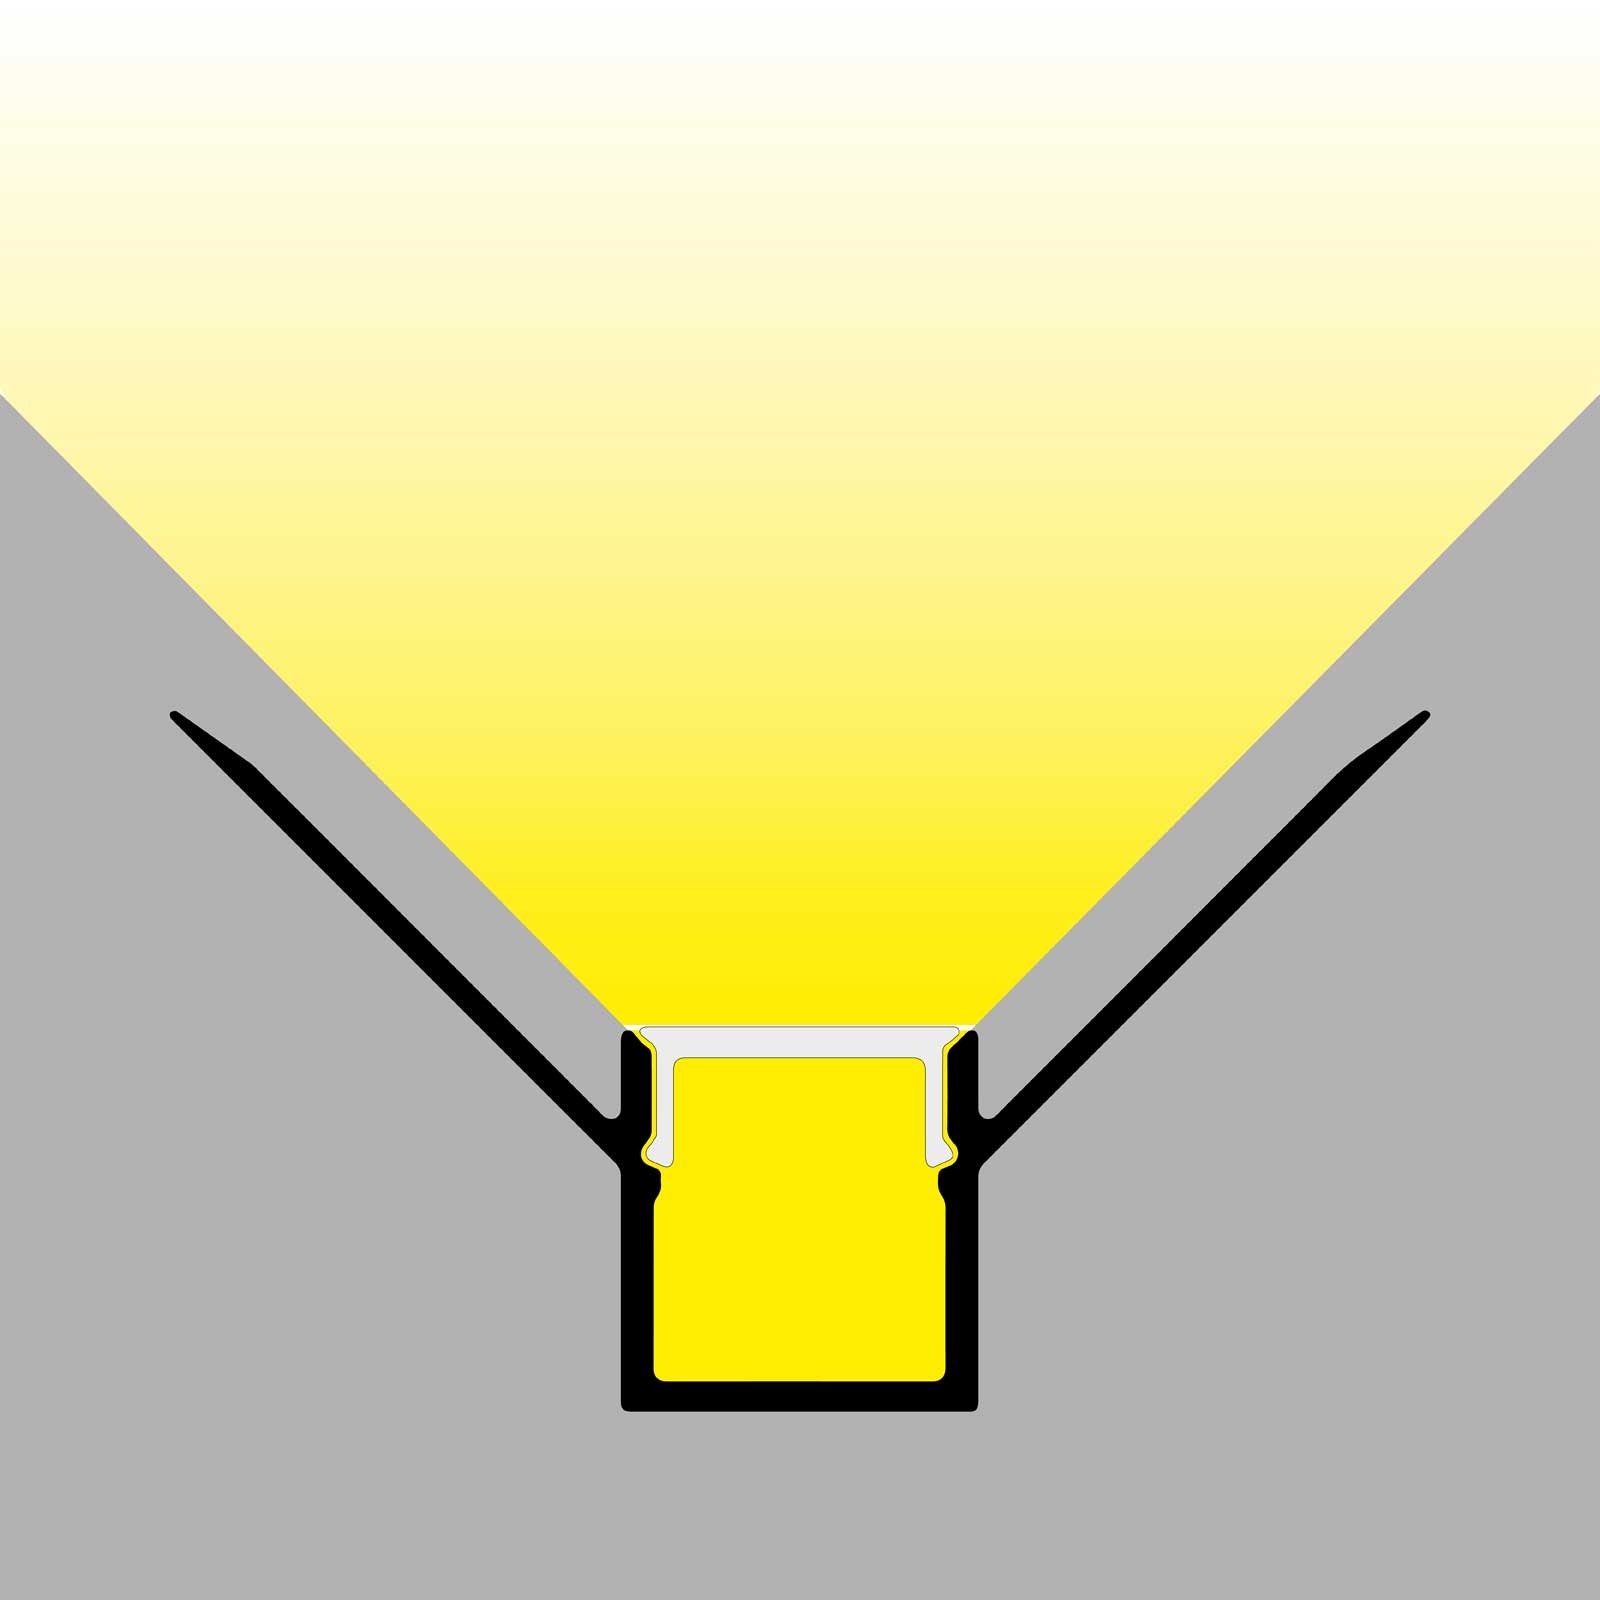 LED stucprofiel / Gips profiel  - BINNENHOEK 9 mm